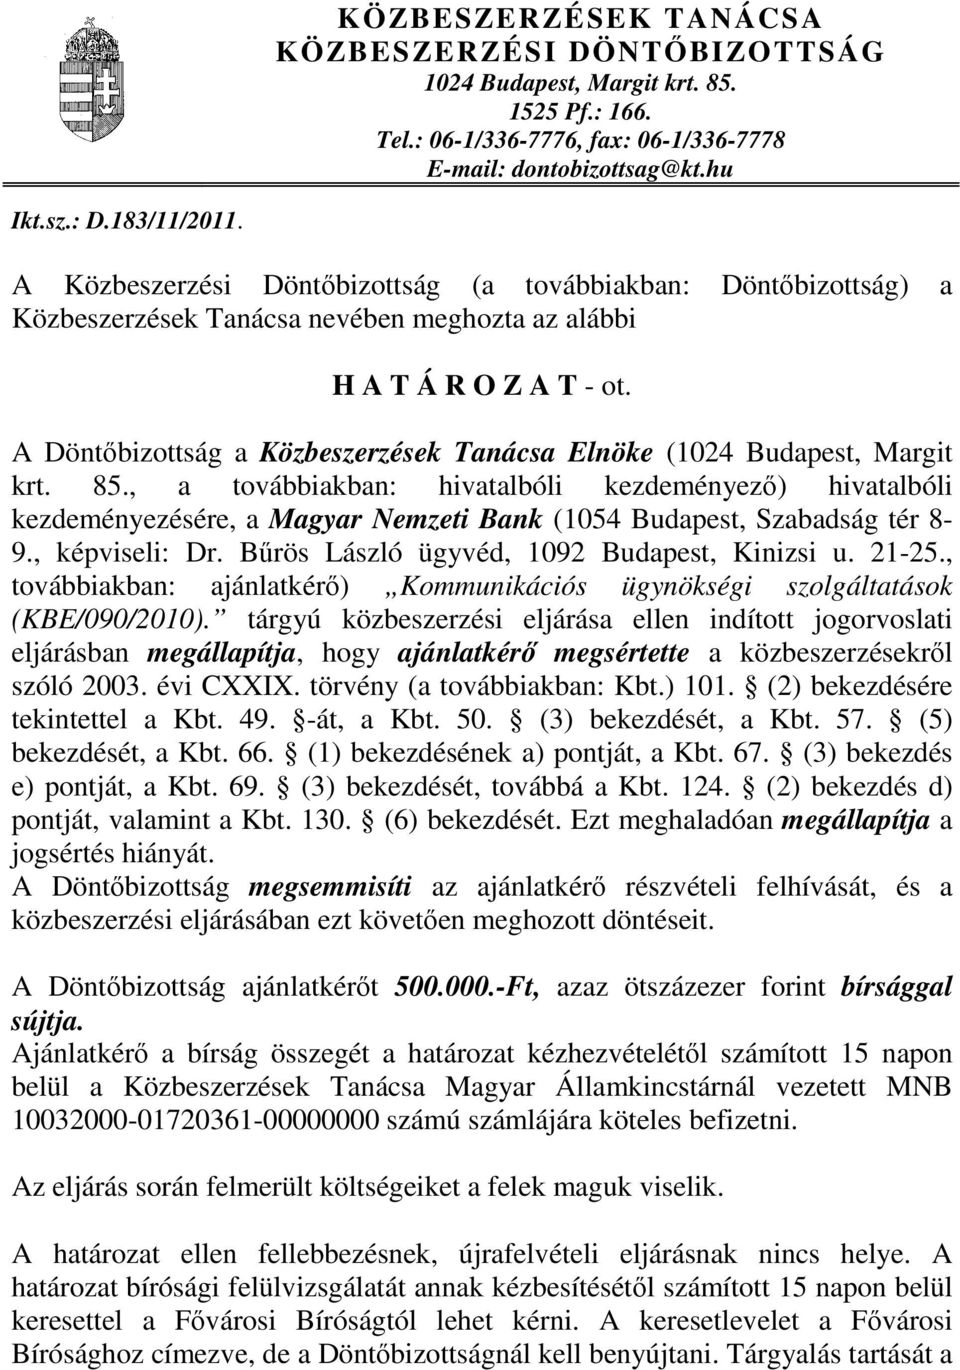 A Döntőbizottság a Közbeszerzések Tanácsa Elnöke (1024 Budapest, Margit krt. 85.